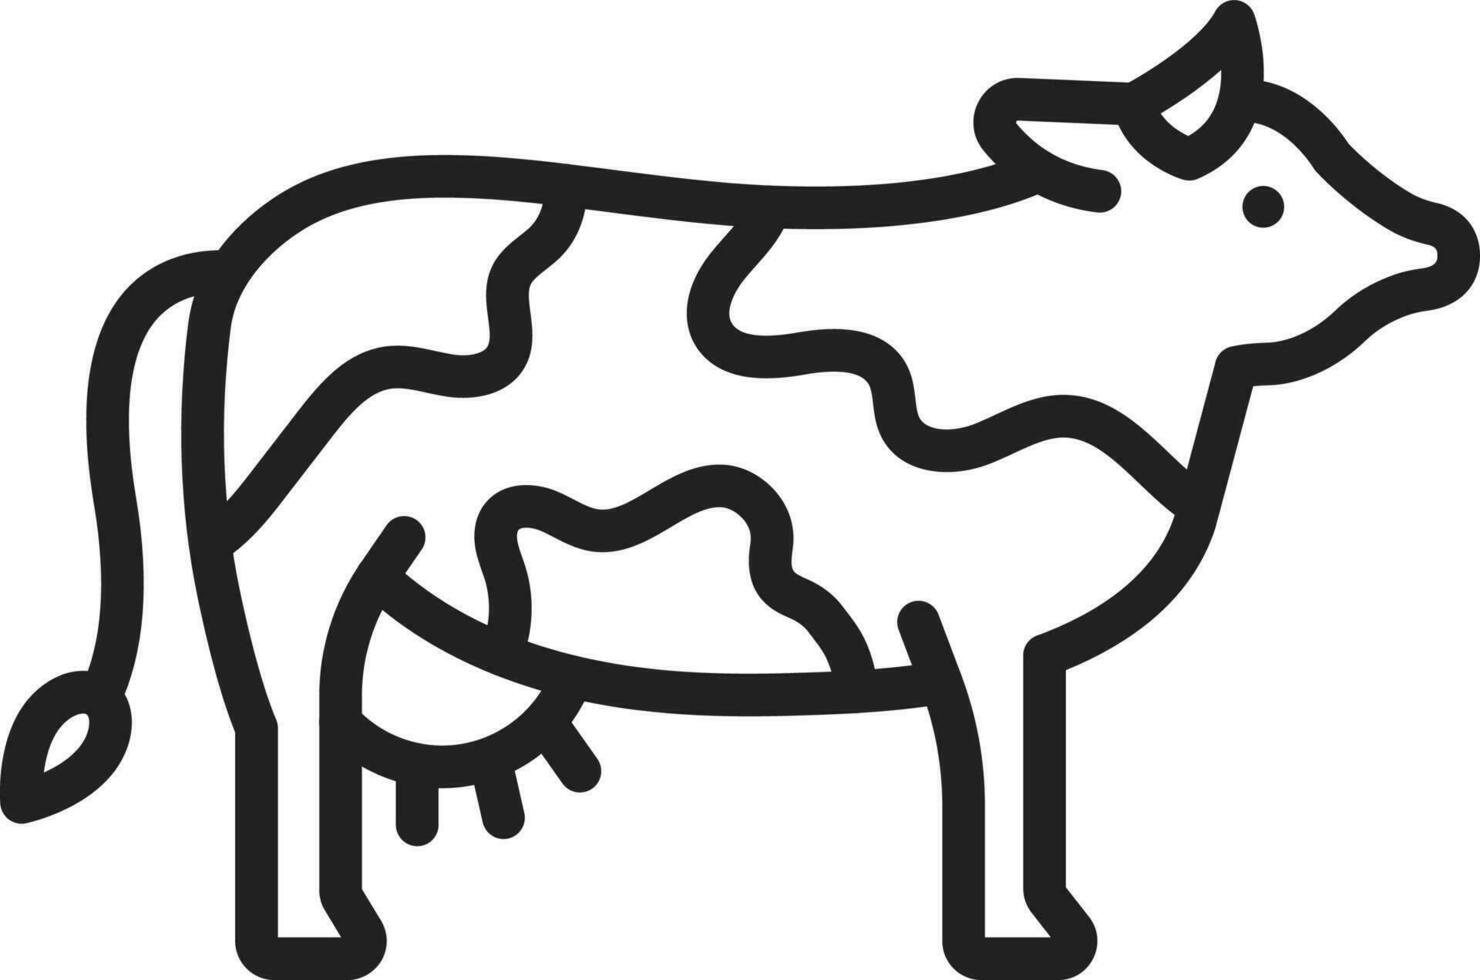 Kuh Symbol Vektor Bild. geeignet zum Handy, Mobiltelefon Apps, Netz Apps und drucken Medien.